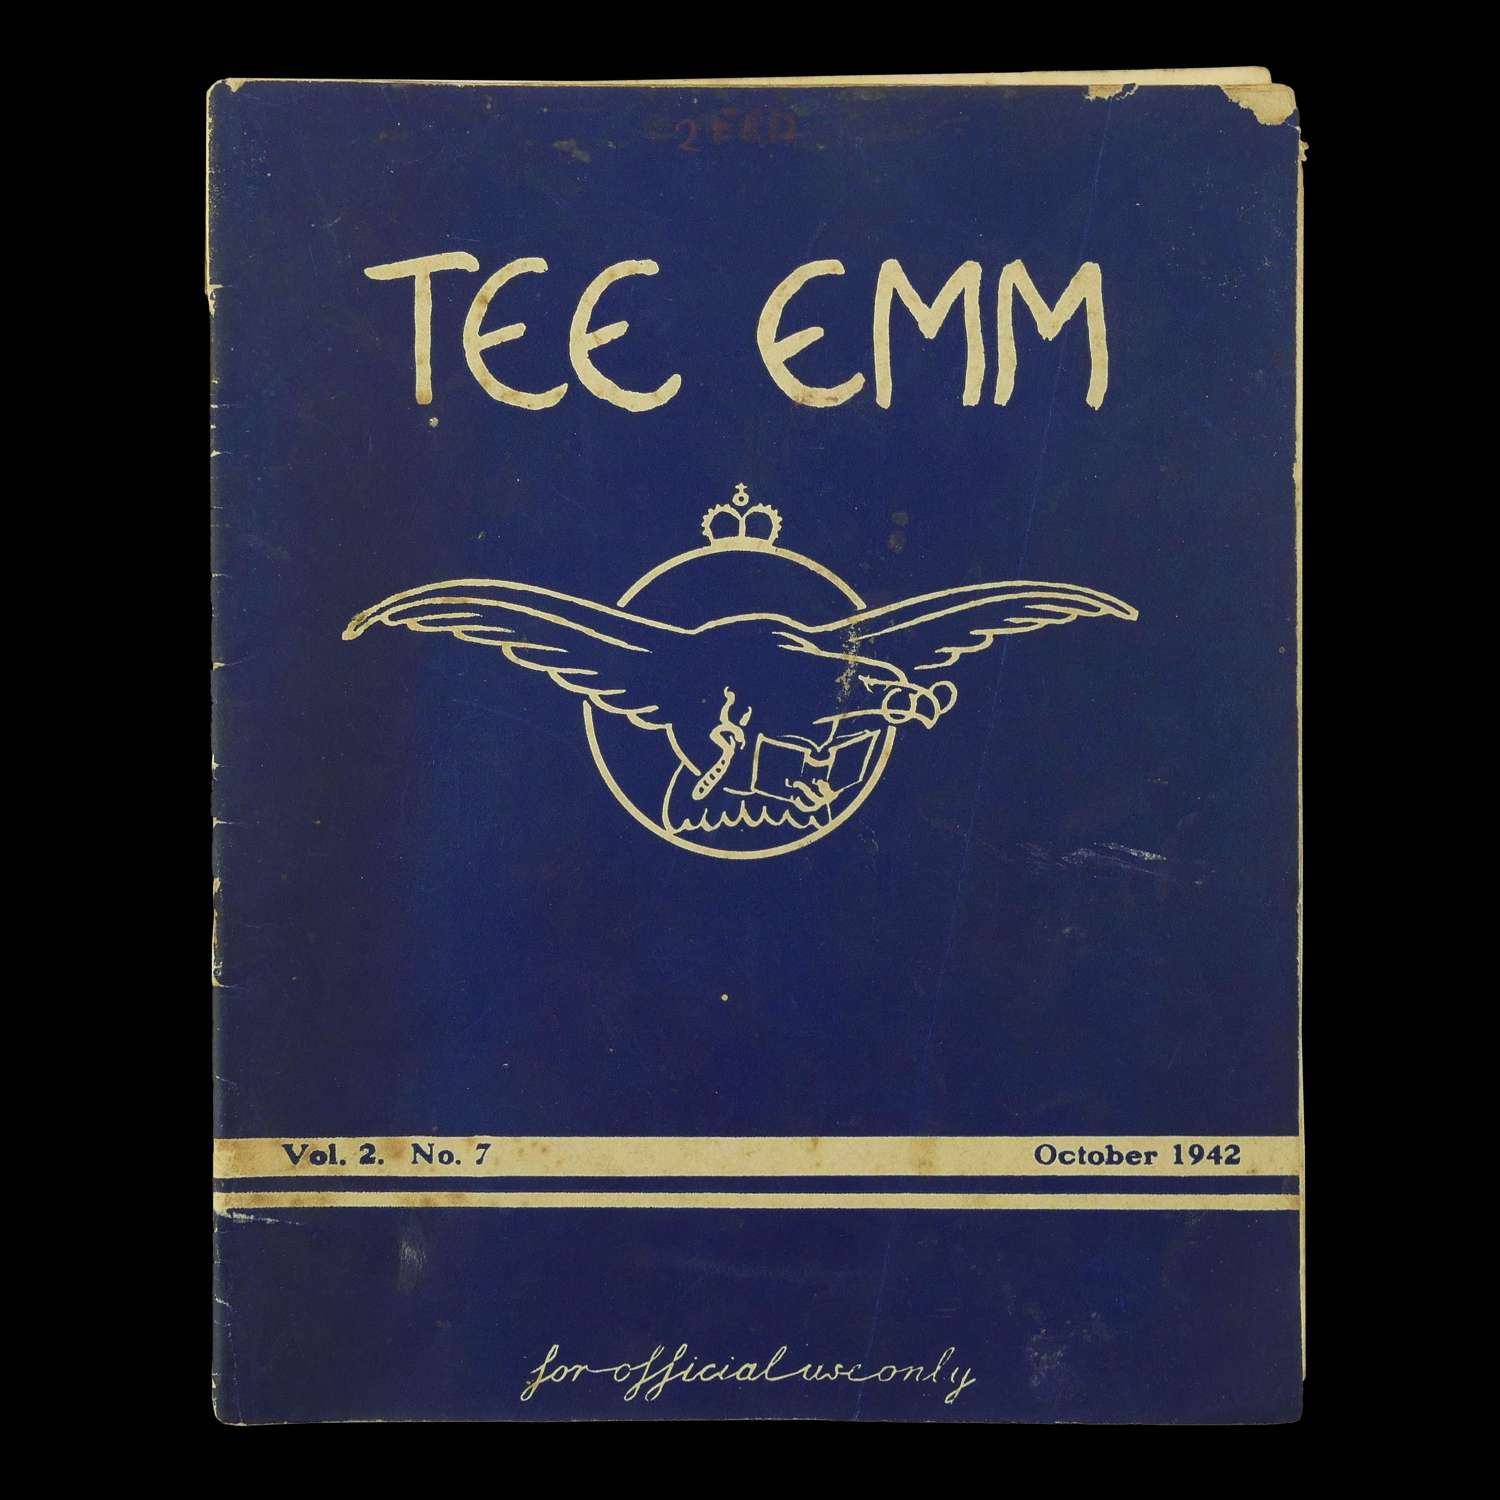 Tee Emm, October 1942